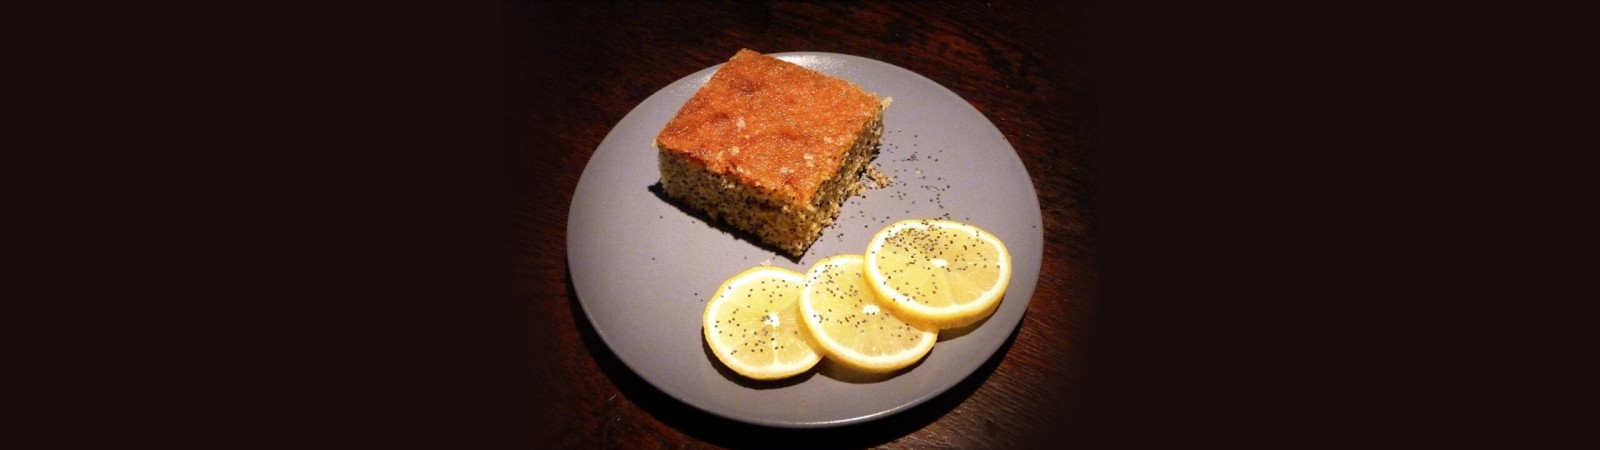 Gâteau au citron et aux graines de pavot